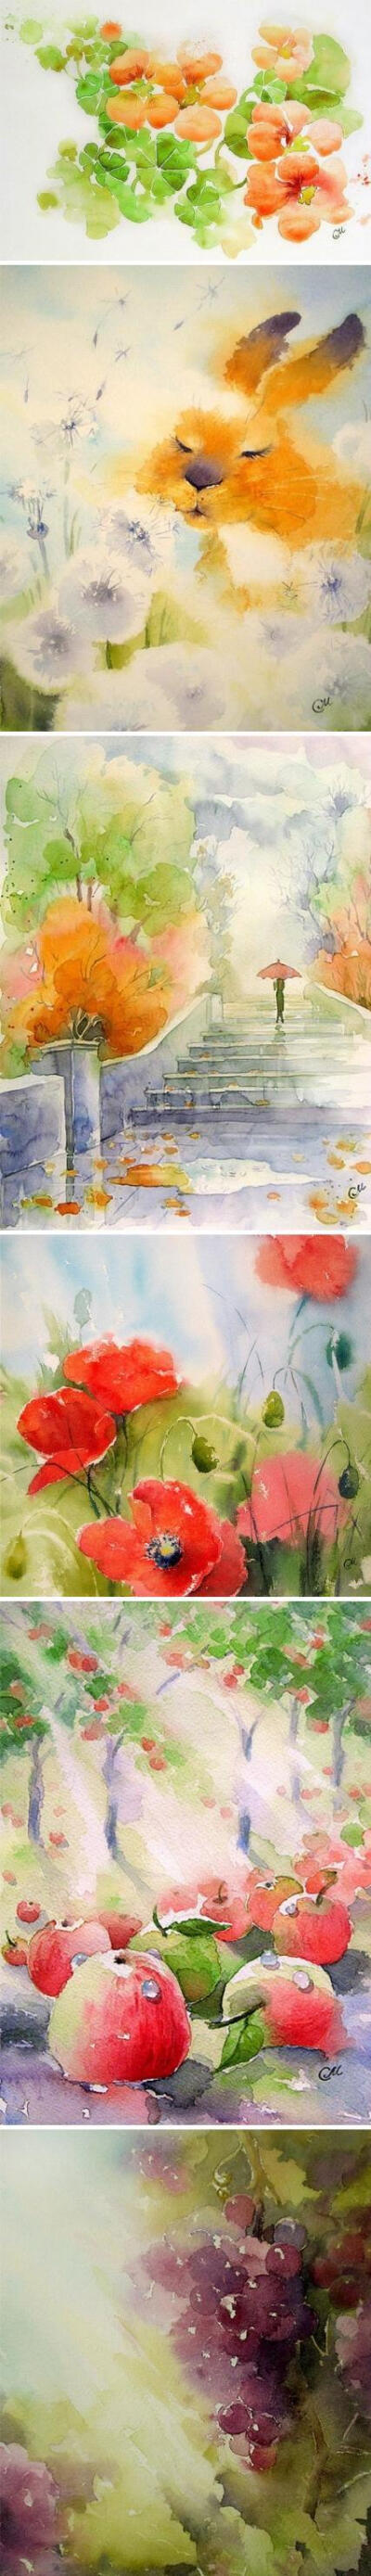 俄罗斯的艺术家Stitch Mary 的柔和水彩作品。好柔柔的感觉。【阿团丸子】